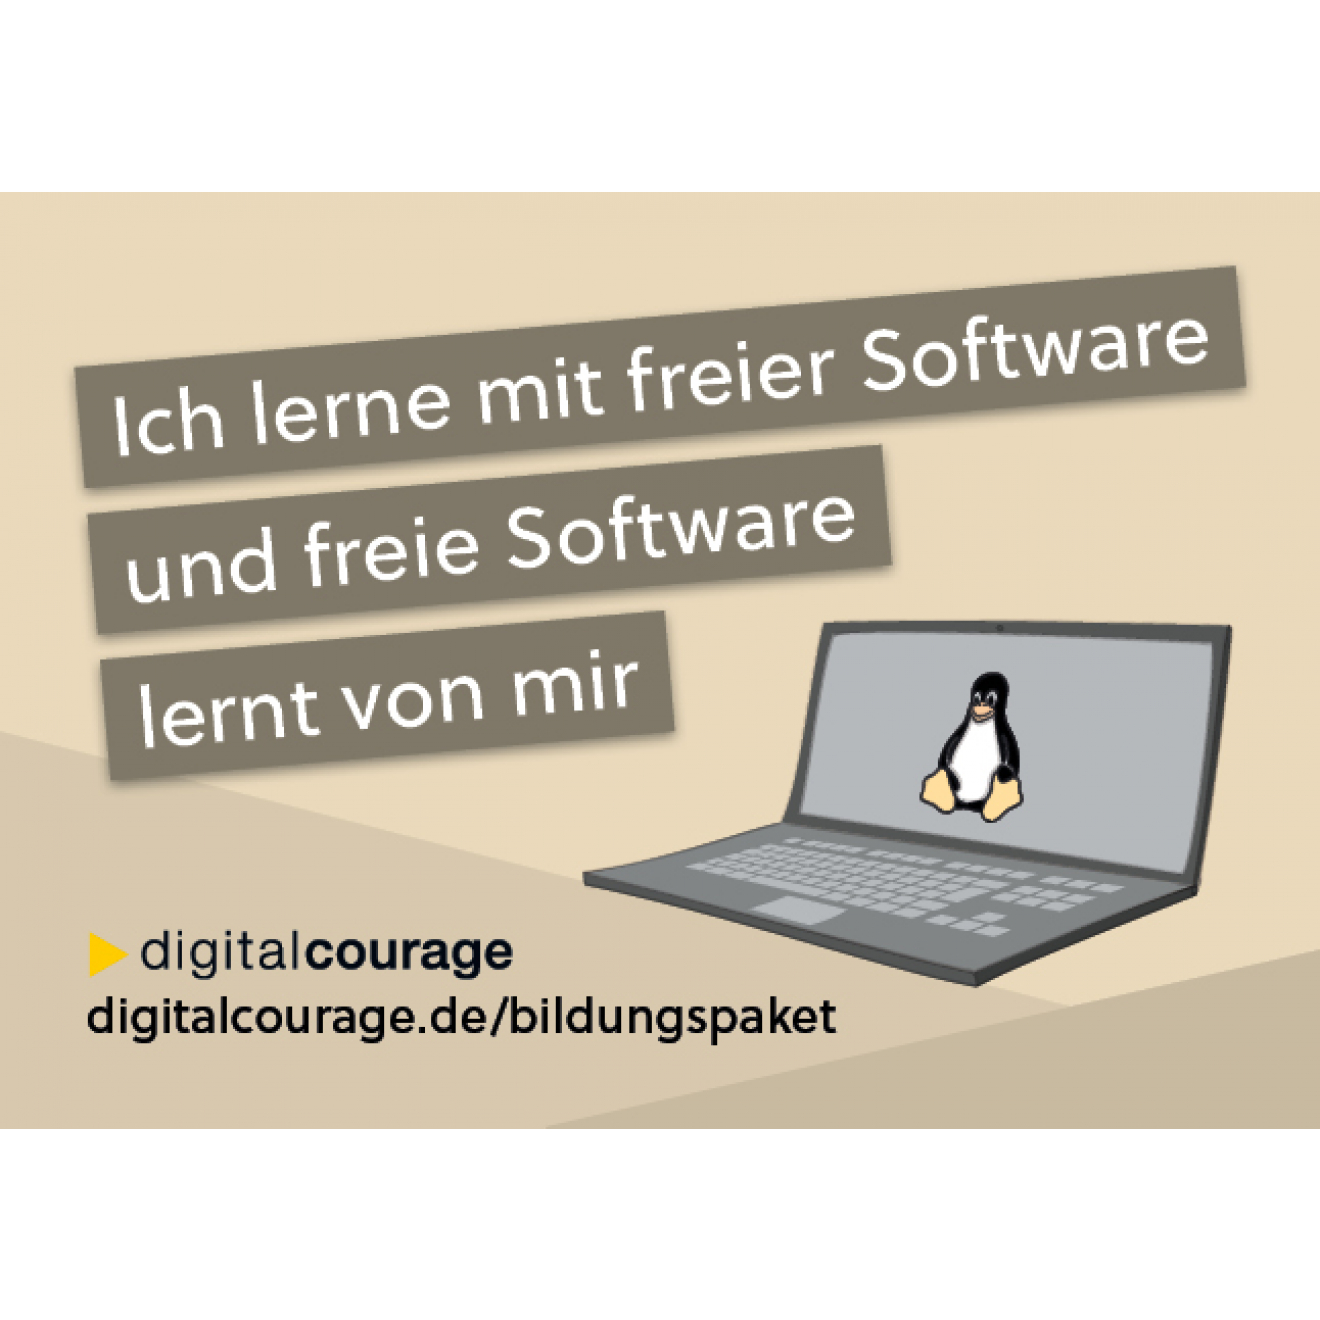 Ich lerne mit freier Software und freie Software lernt von mir